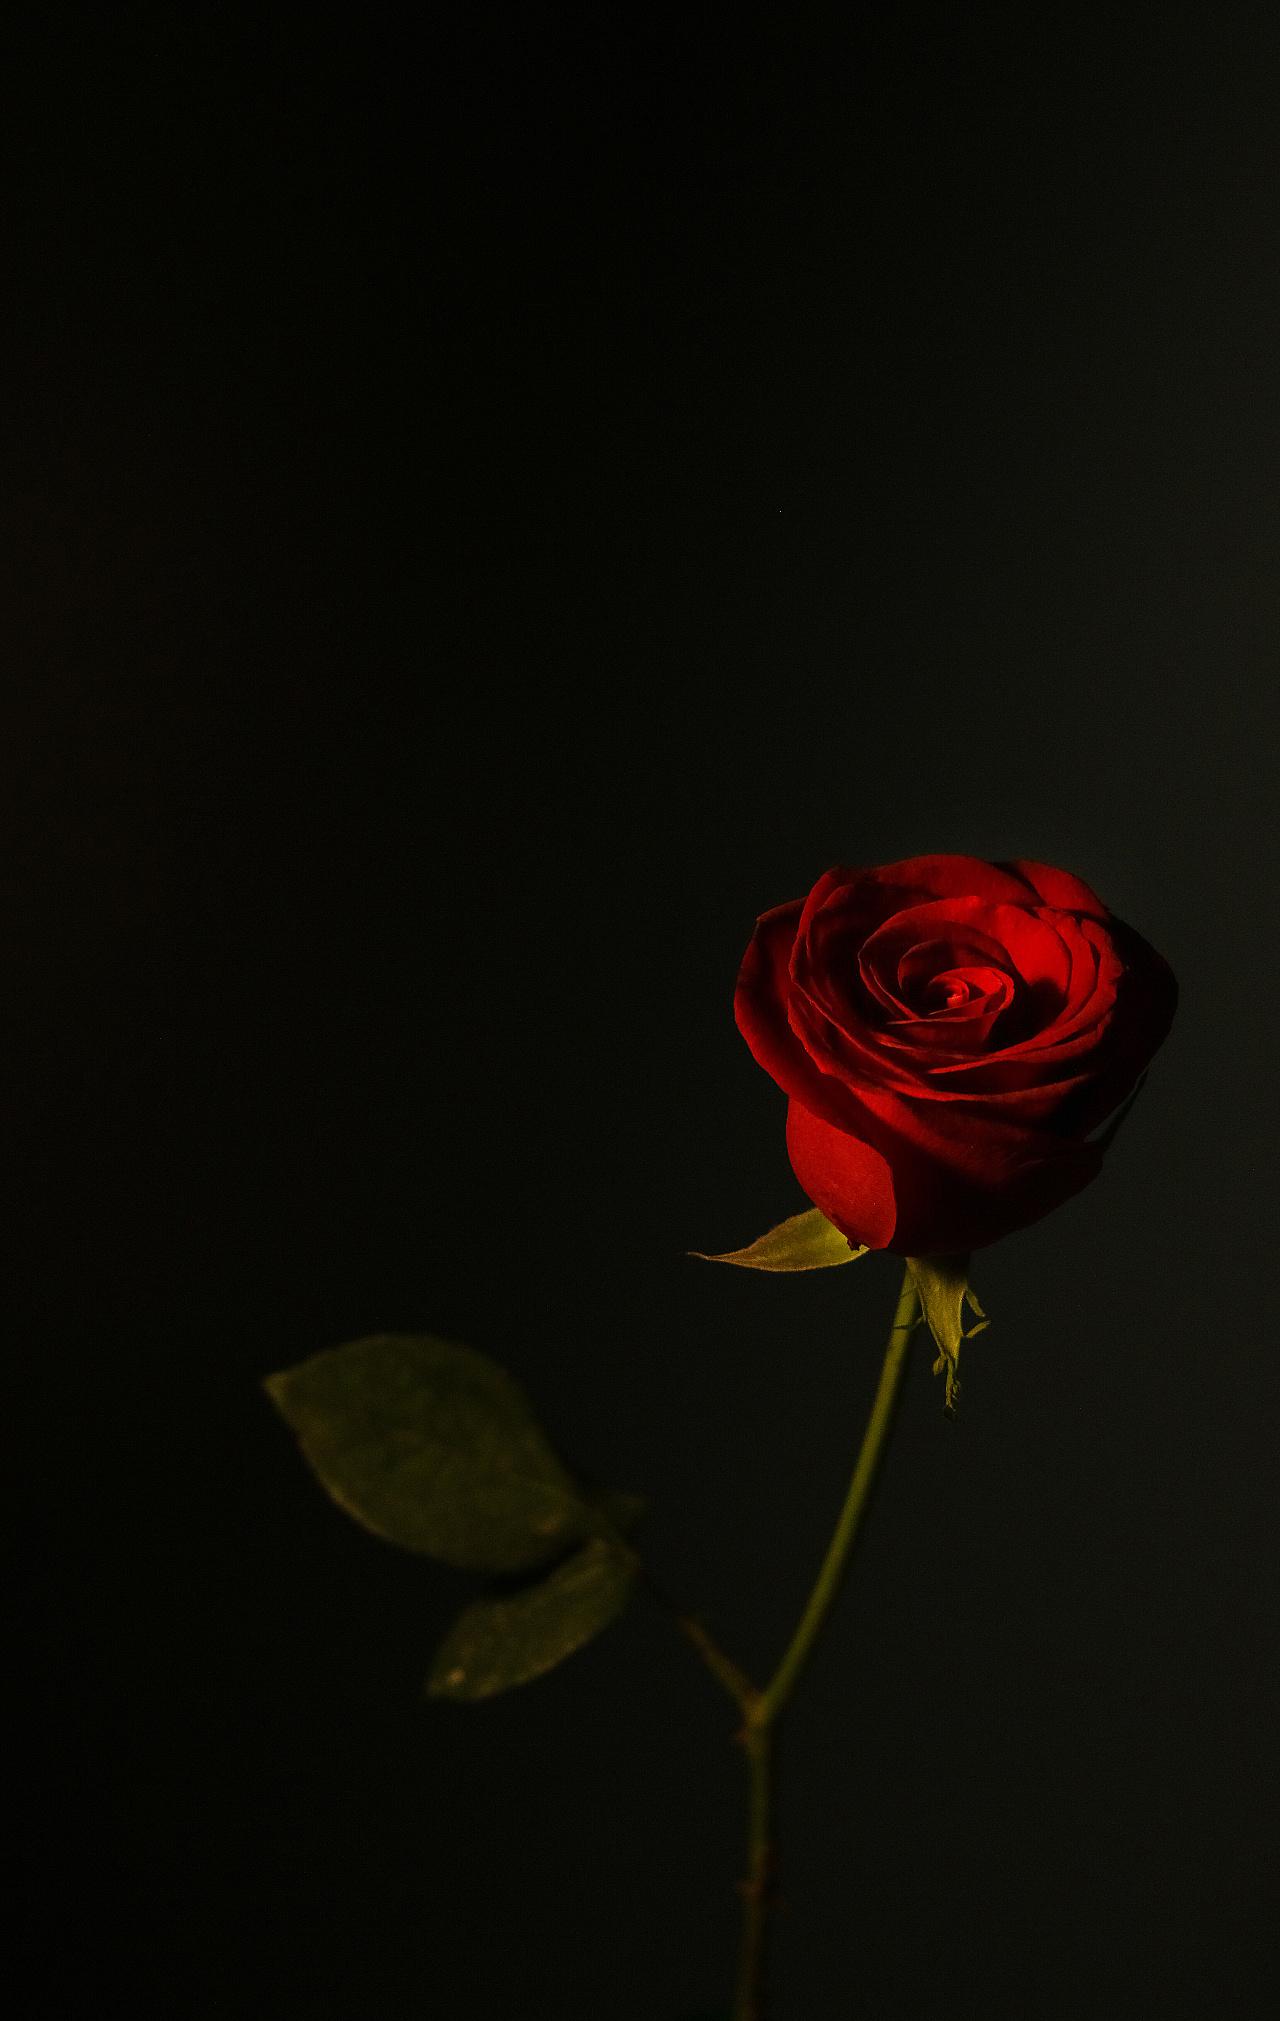 19朵黑骑士玫瑰花束 花材饱满 按图制作订单详情-花娃-中国最大花店加盟平台